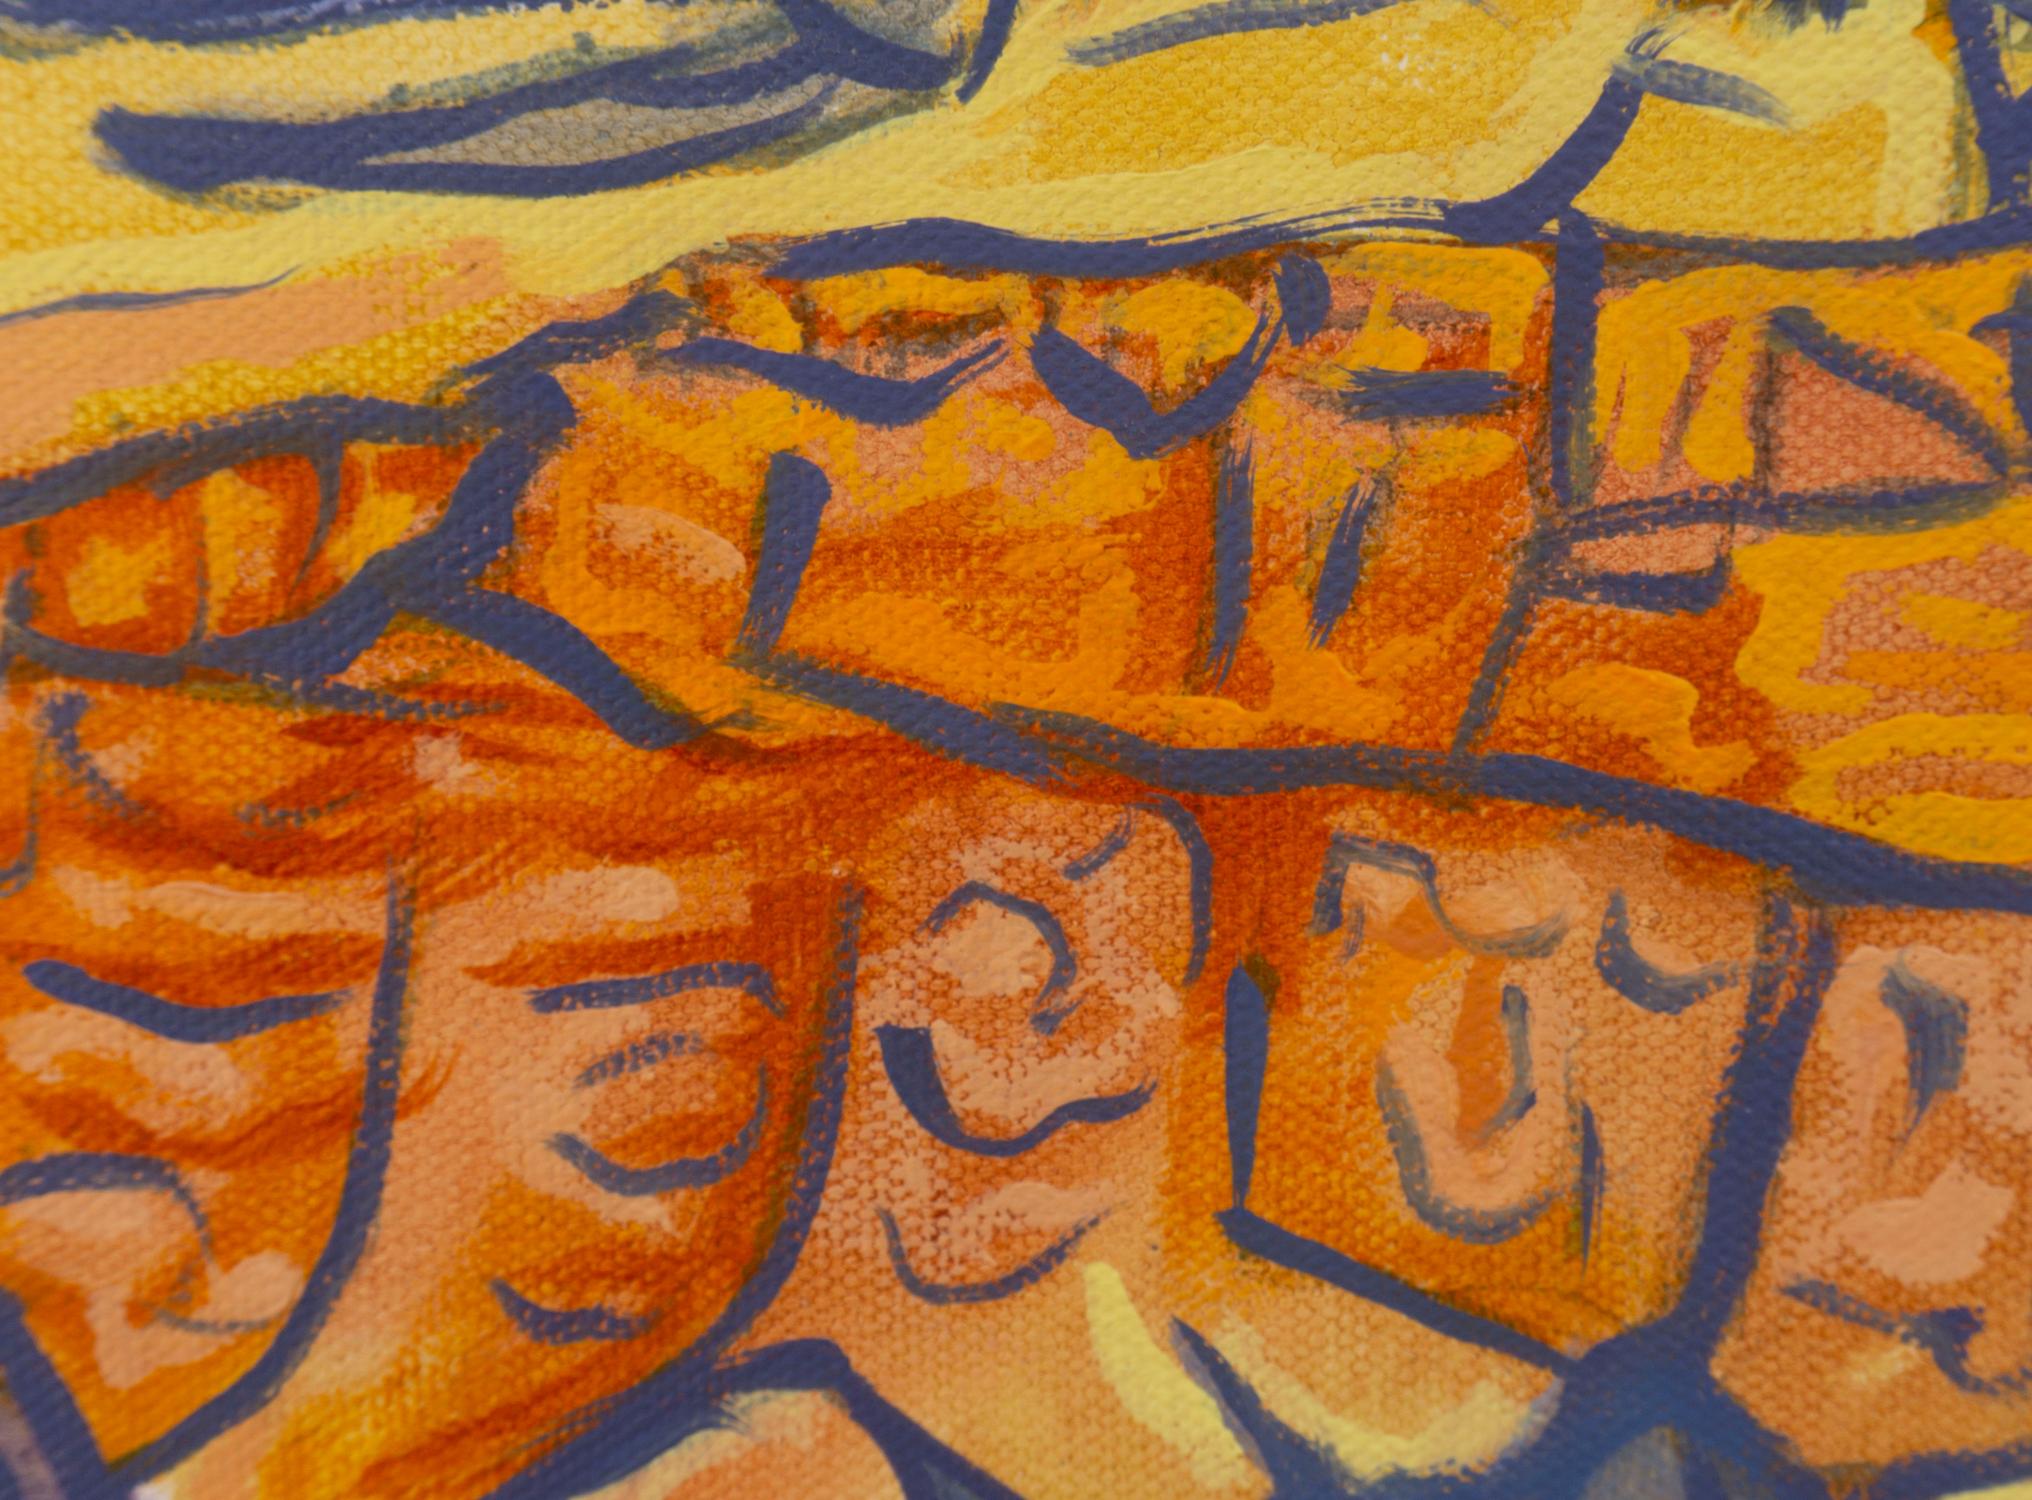 <p>Commentaires de l'artiste<br />L'artiste Crystal DiPietro peint un coucher de soleil alors que la lumière chaude descend au-delà de l'horizon. Les rayons dorés illuminent les imposantes mesas parées de nuances d'orange. Il crée un contraste